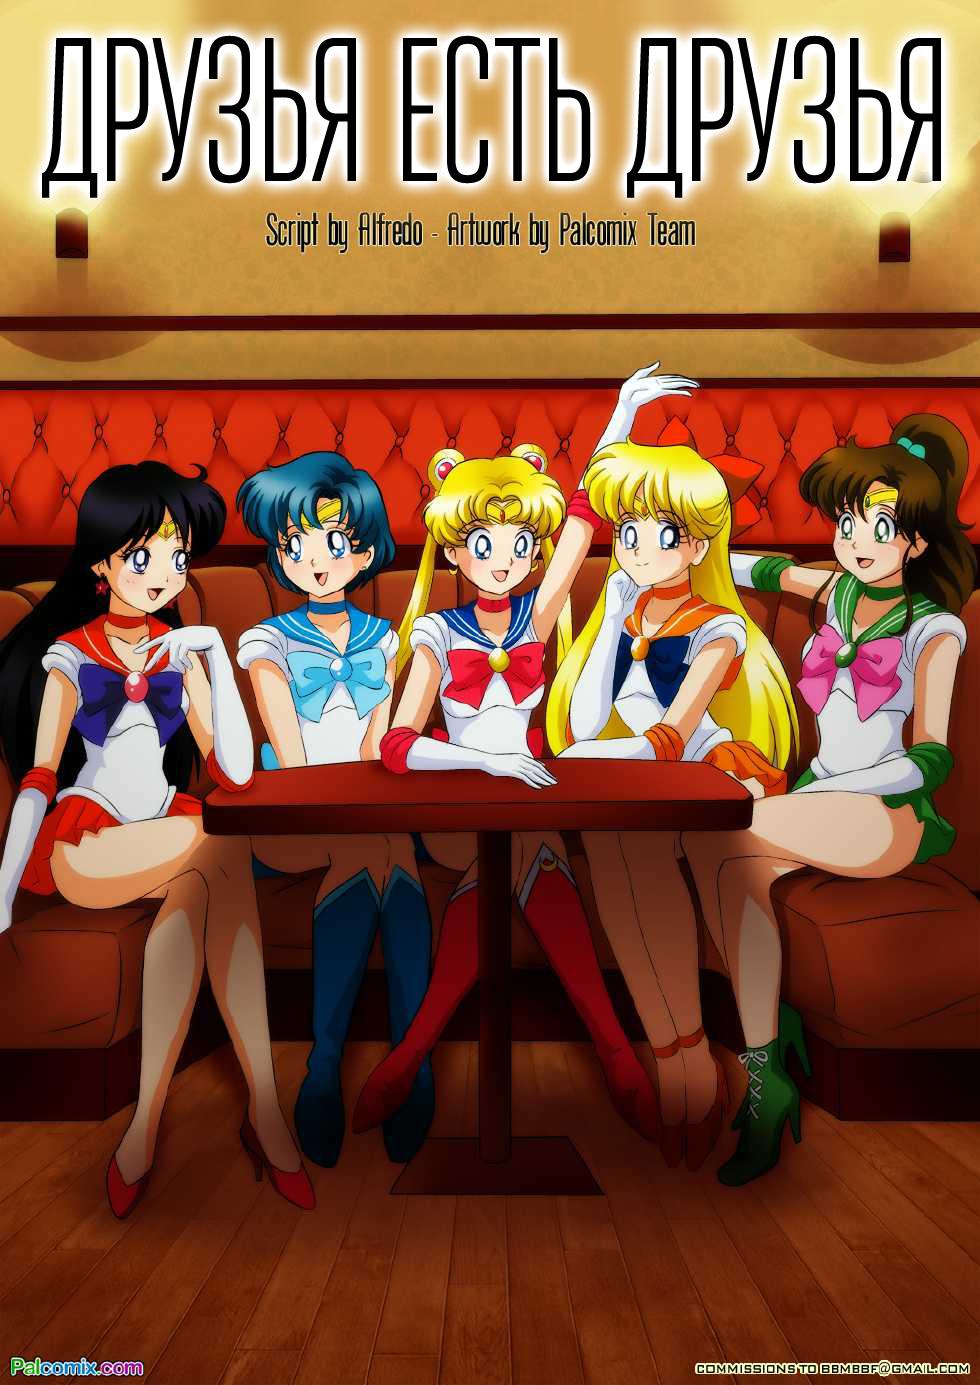 SureFap xxx porno Sailor Moon - [Palcomix] - Friends Will Be Friends